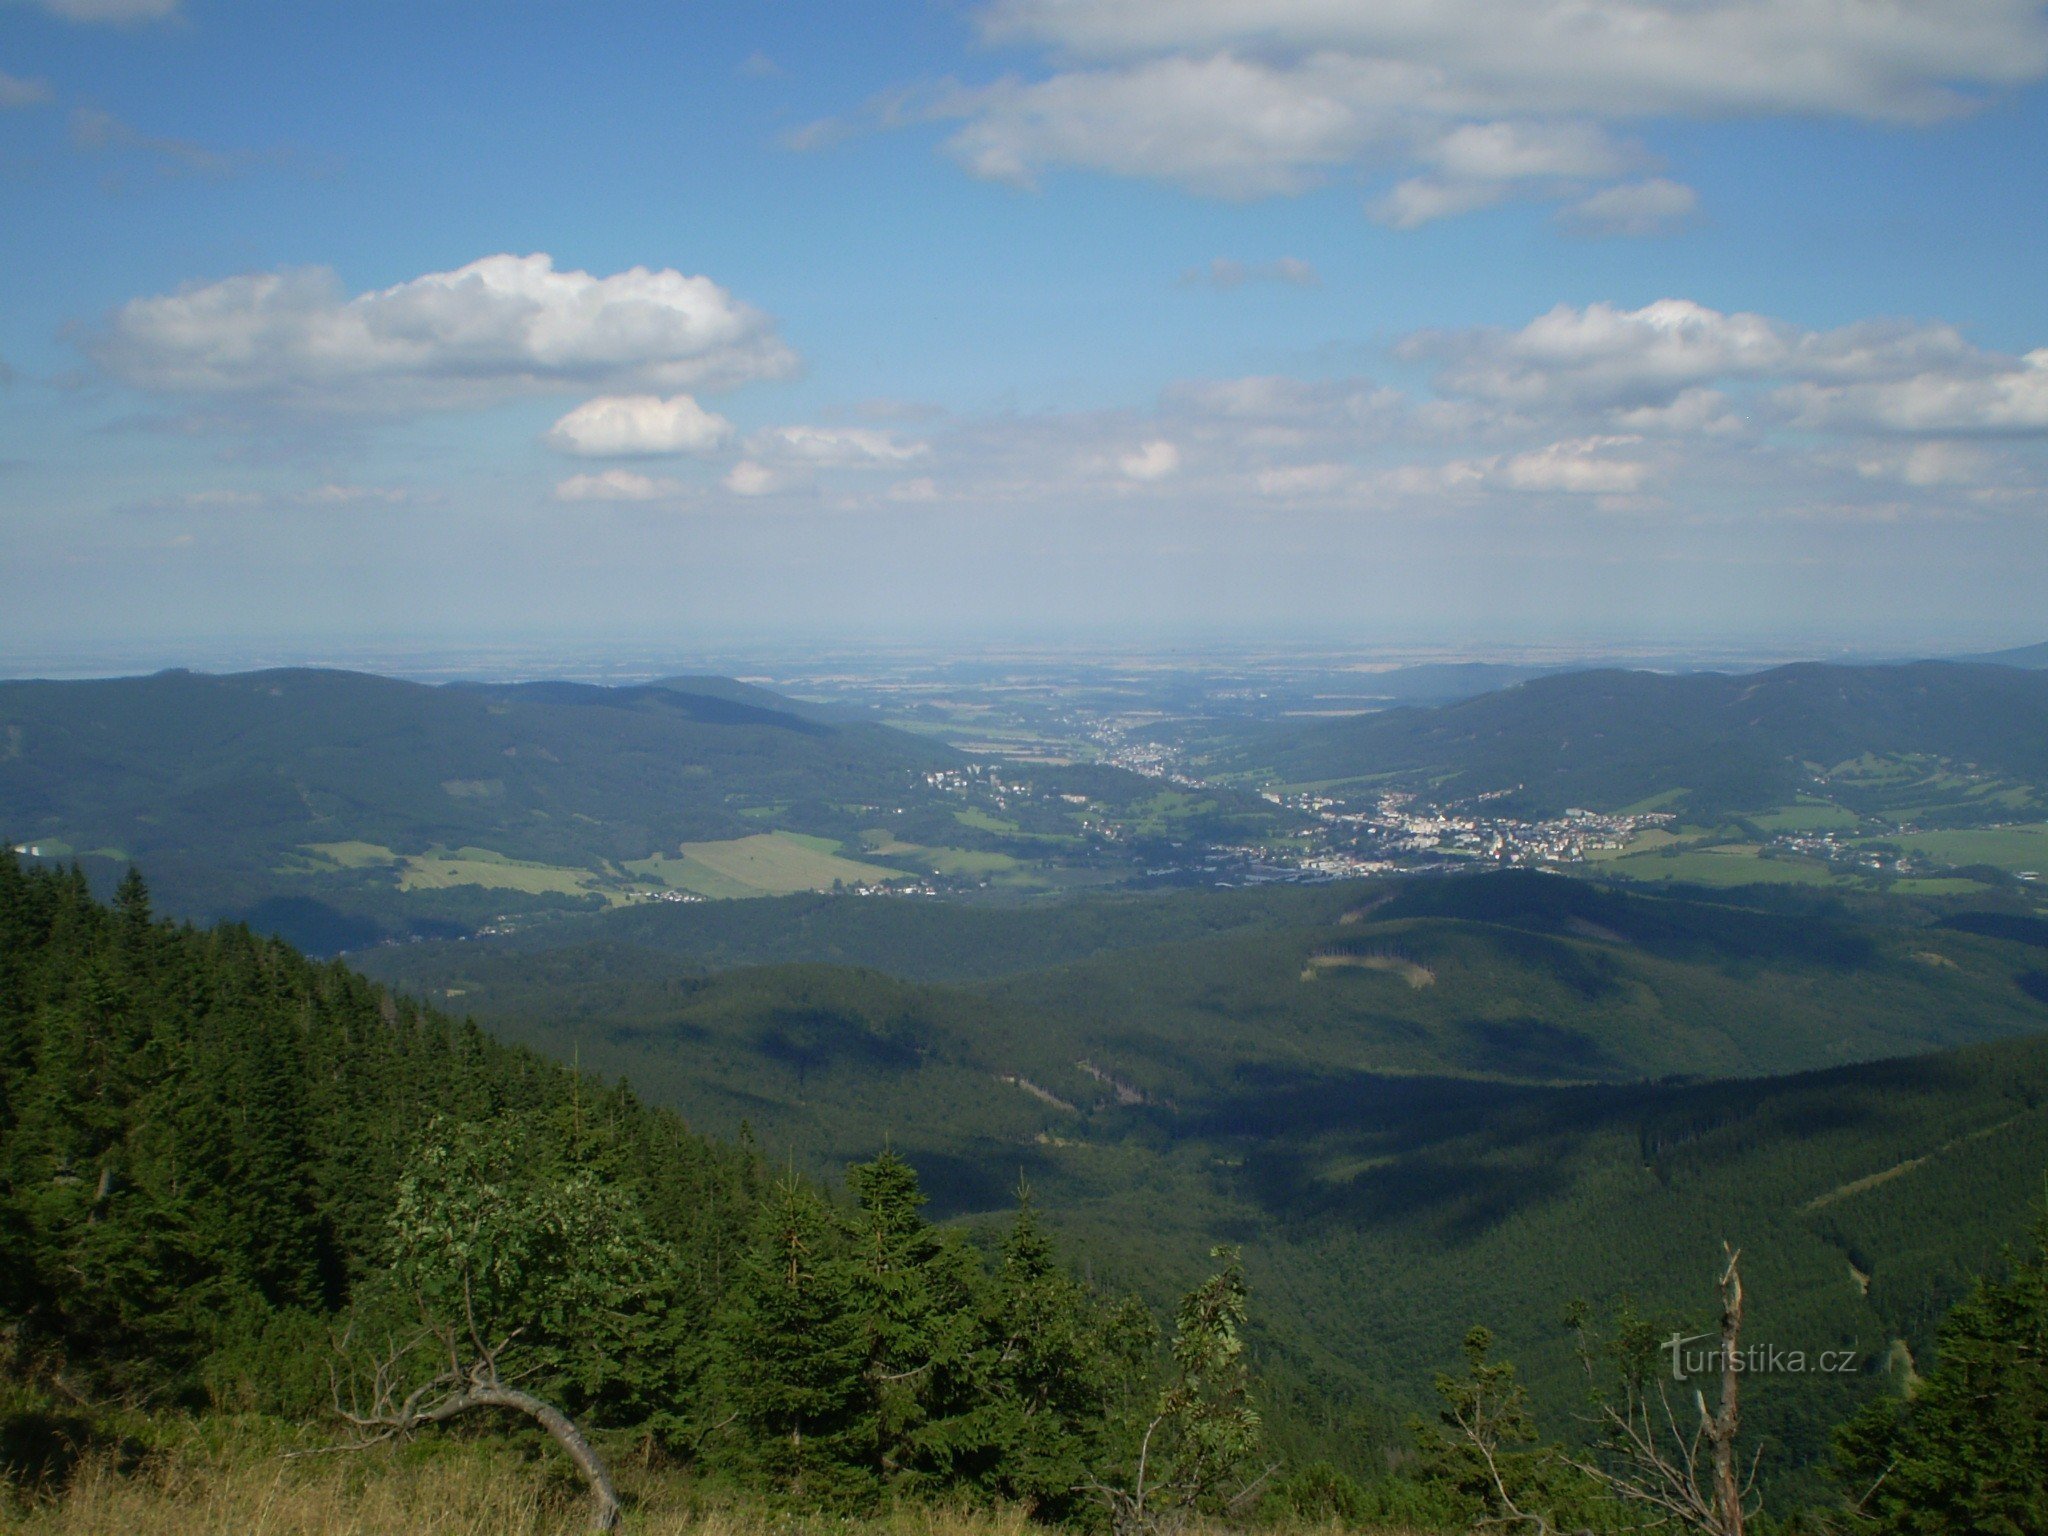 Šerák 1 的景观